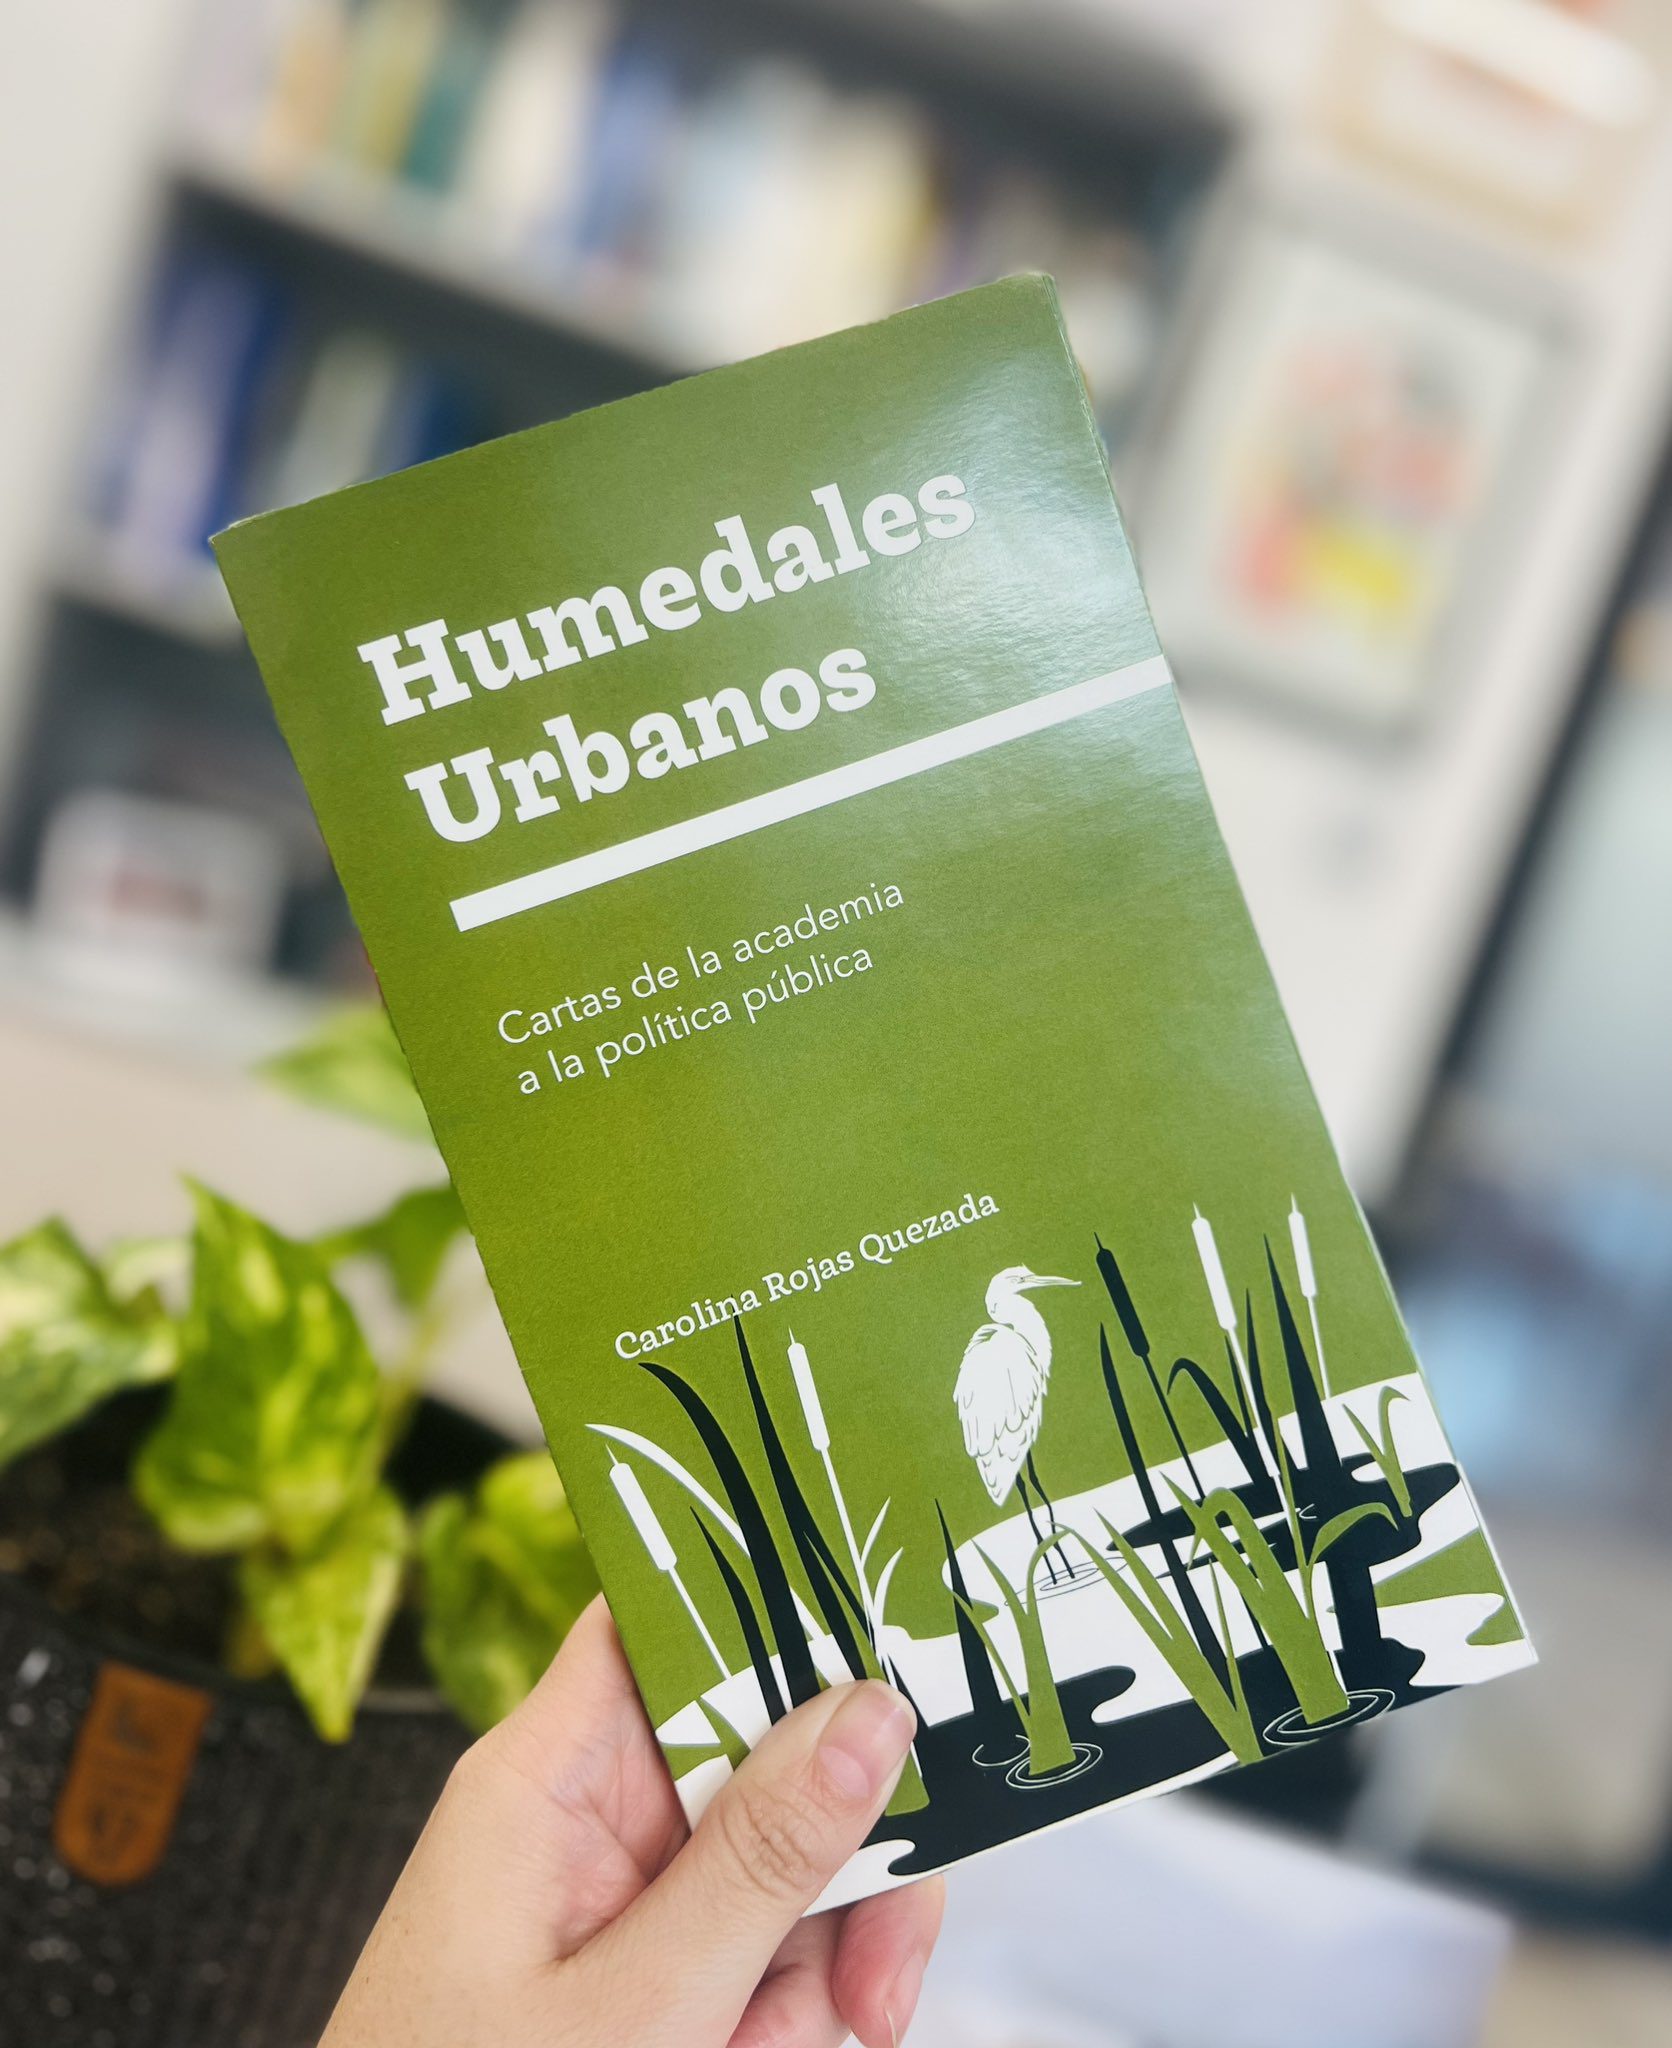 Profesora Carolina Rojas lanza libro “Humedales Urbanos: cartas de la academia a la política pública”